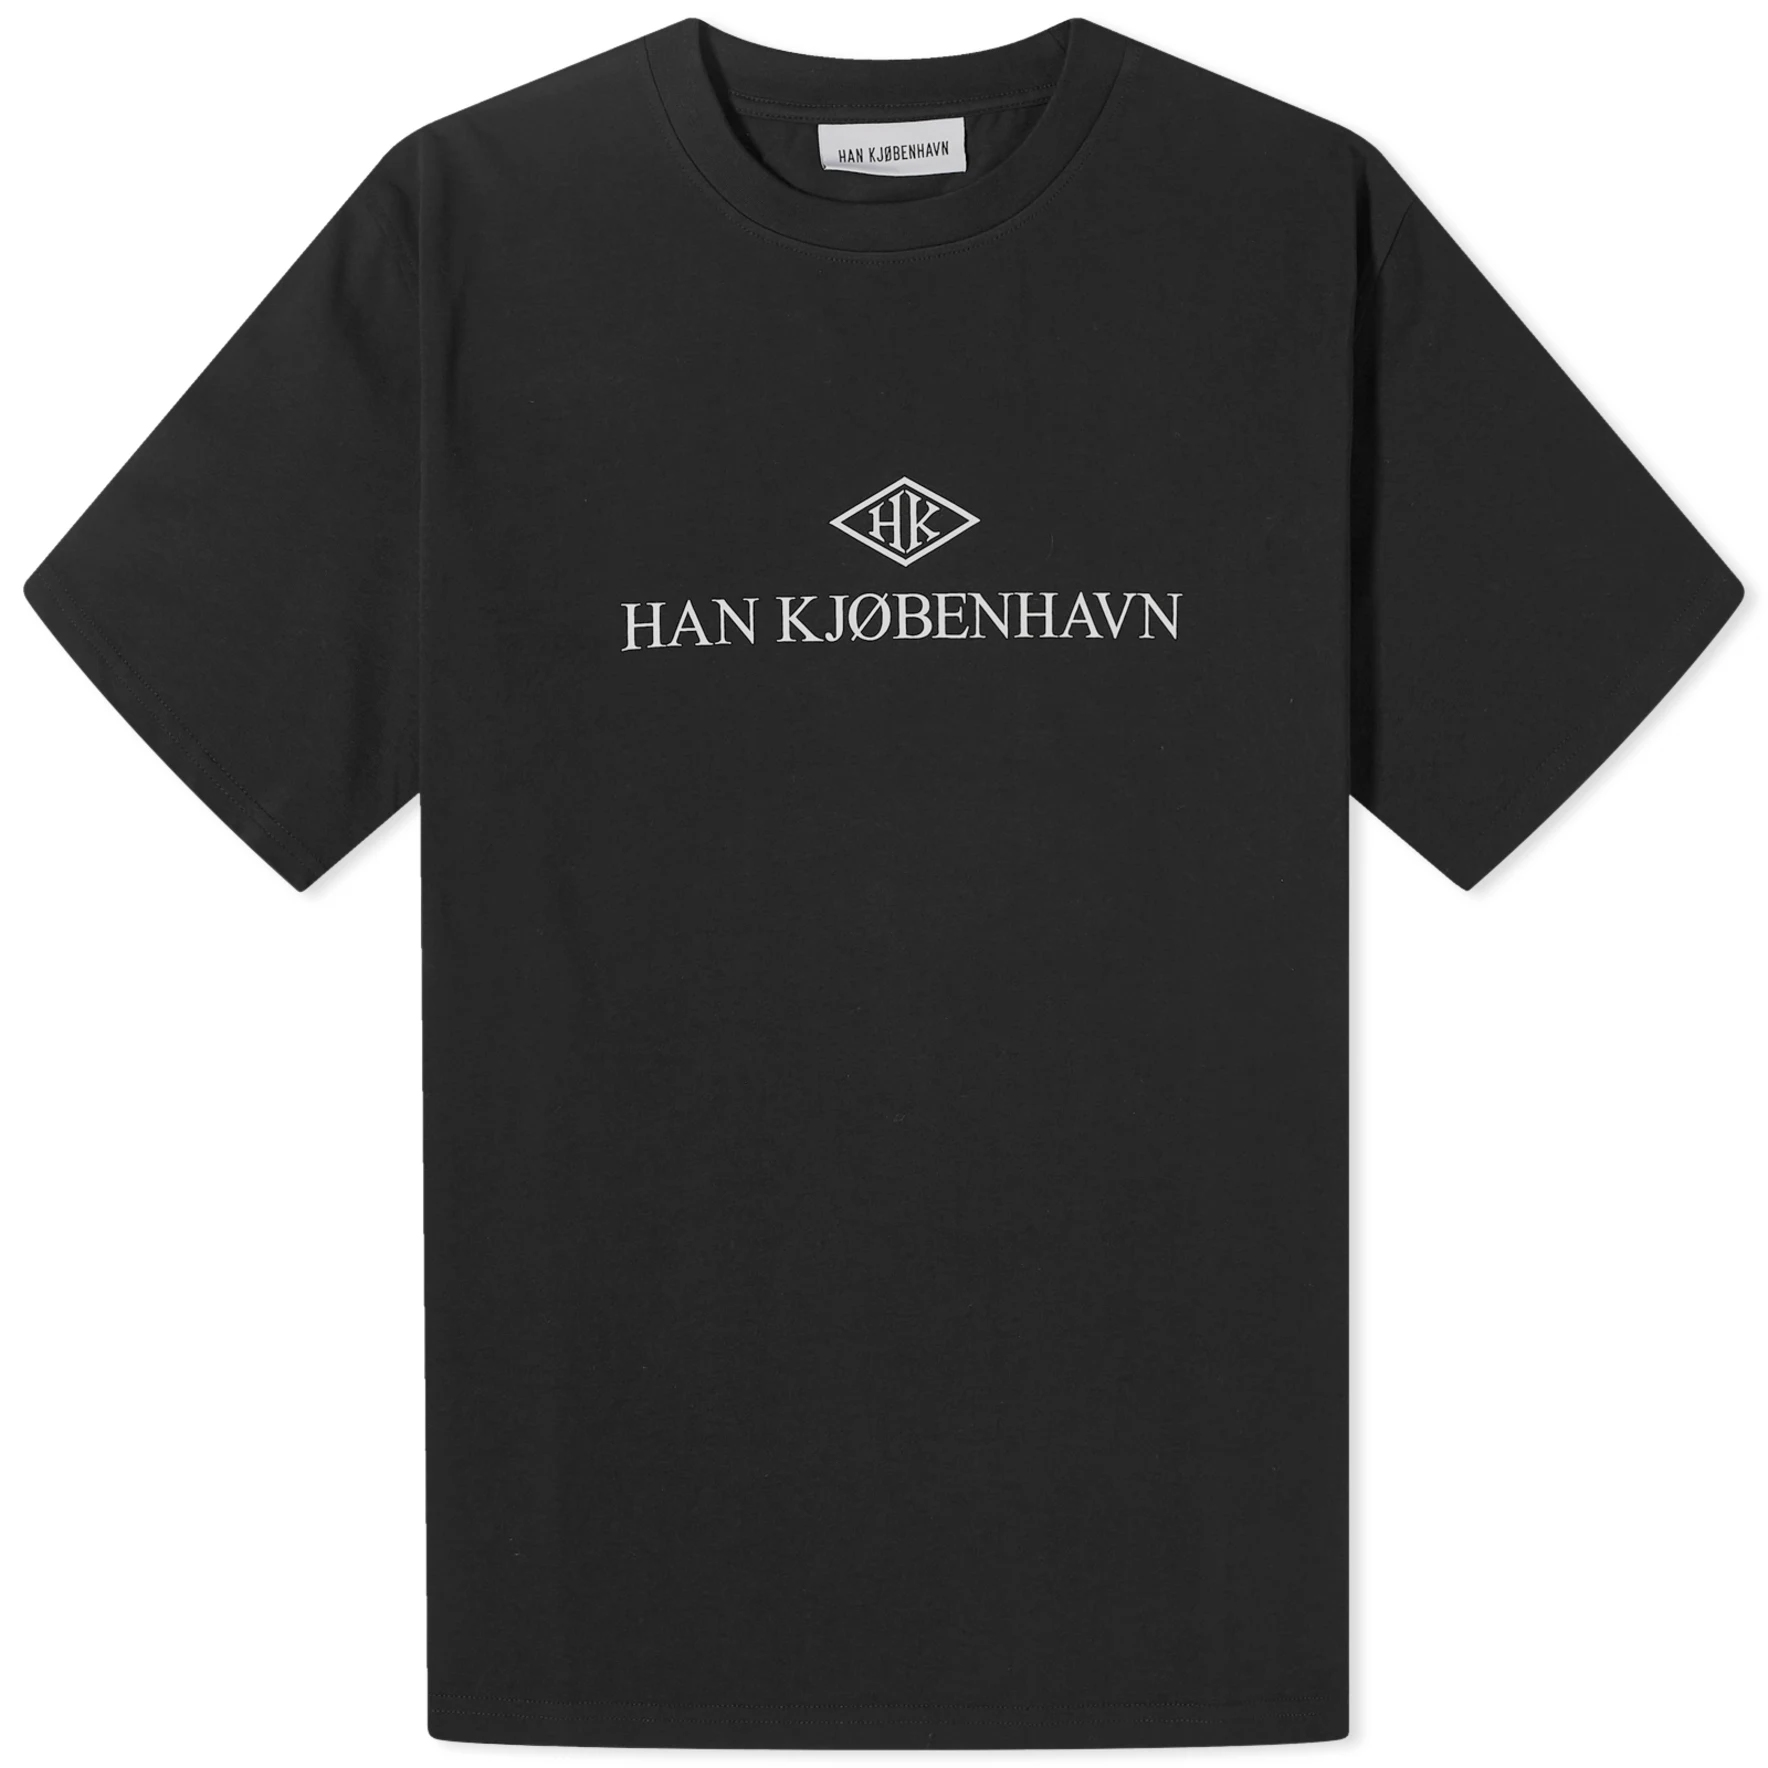 Футболка Han Kjobenhavn Hk Logo Boxy, черный худи han kjobenhavn силуэт свободный размер s черный